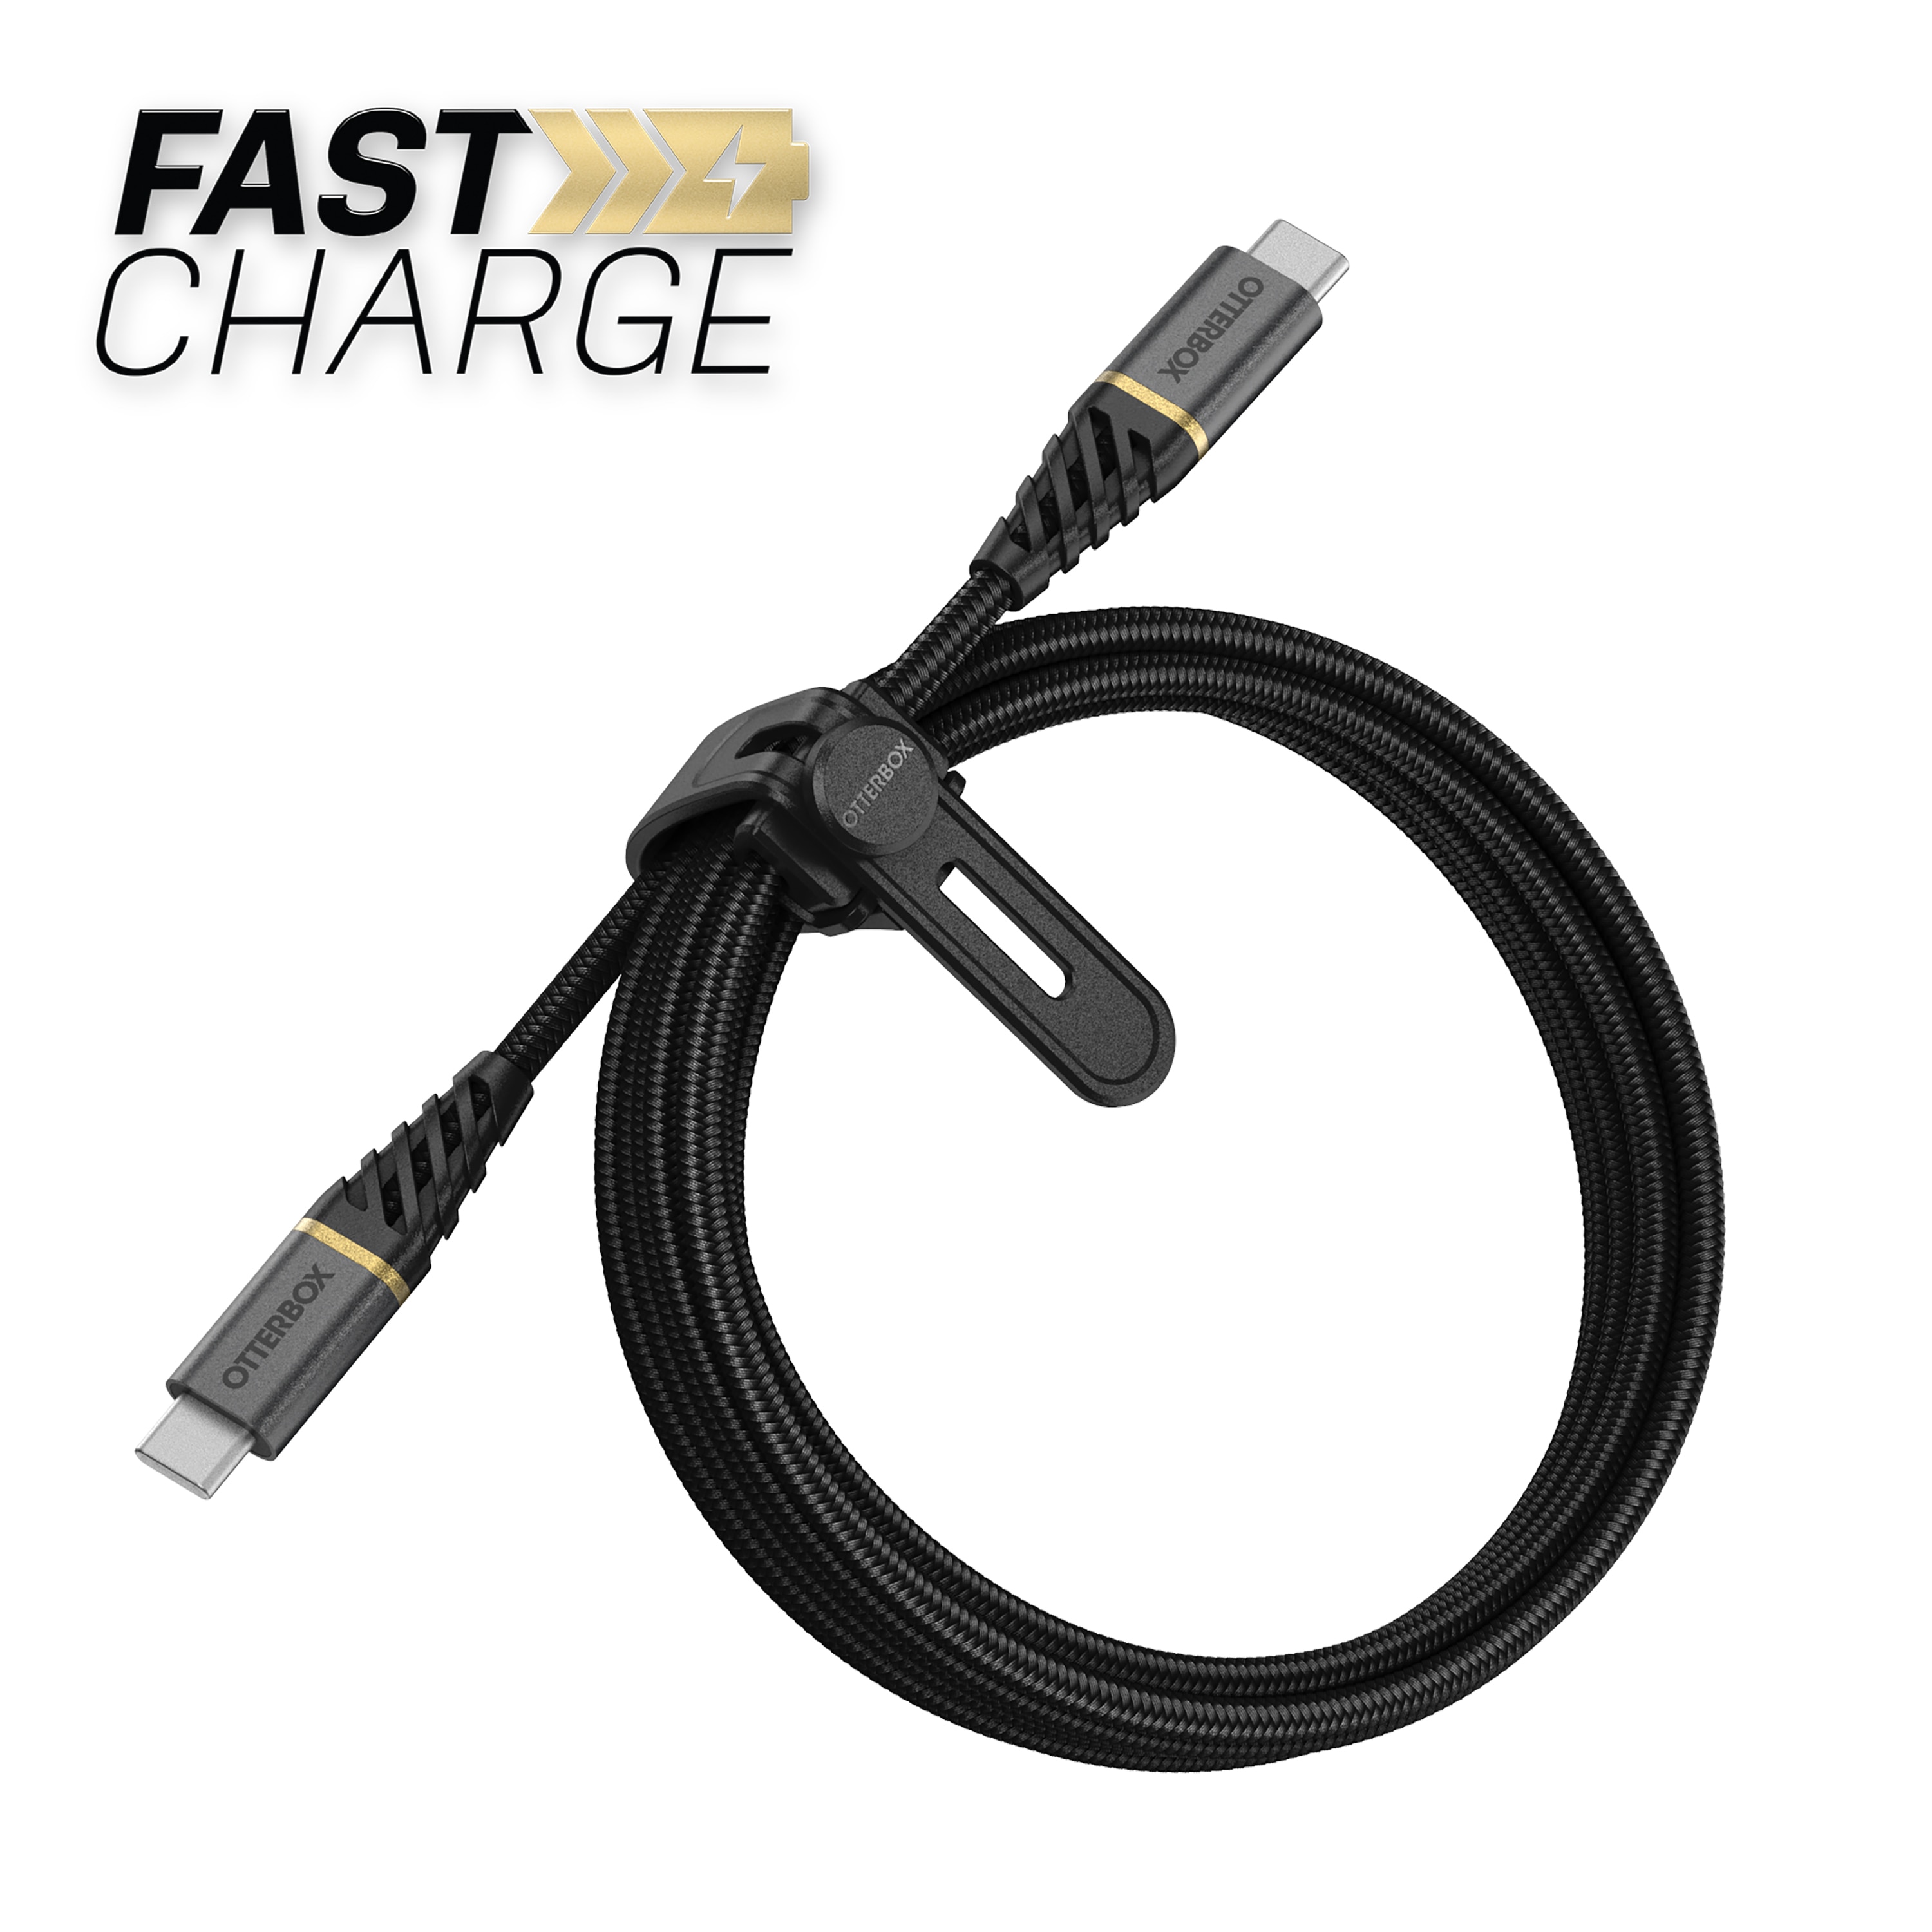 USB-C vers USB-C Câble 1 mètre Premium Fast Charge, noir